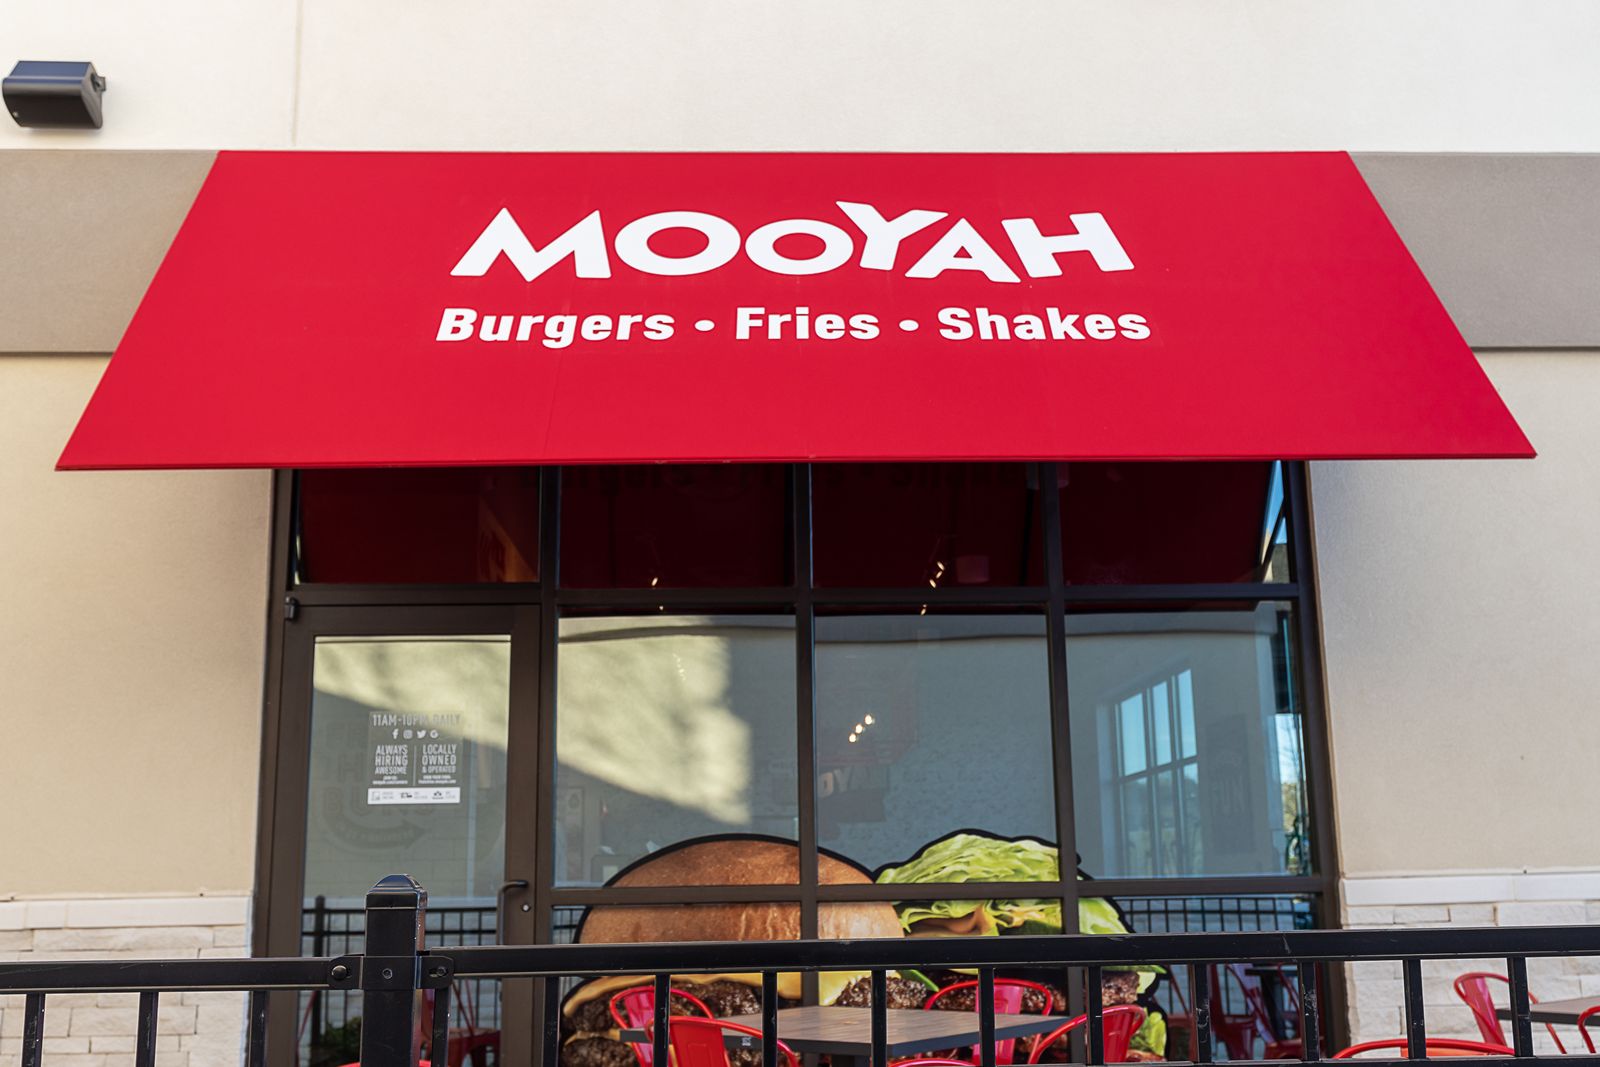 MOOYAH Burgers, Fries & Shakes signe un accord tous les 2,5 jours au troisième trimestre avec des engagements pour 22 restaurants